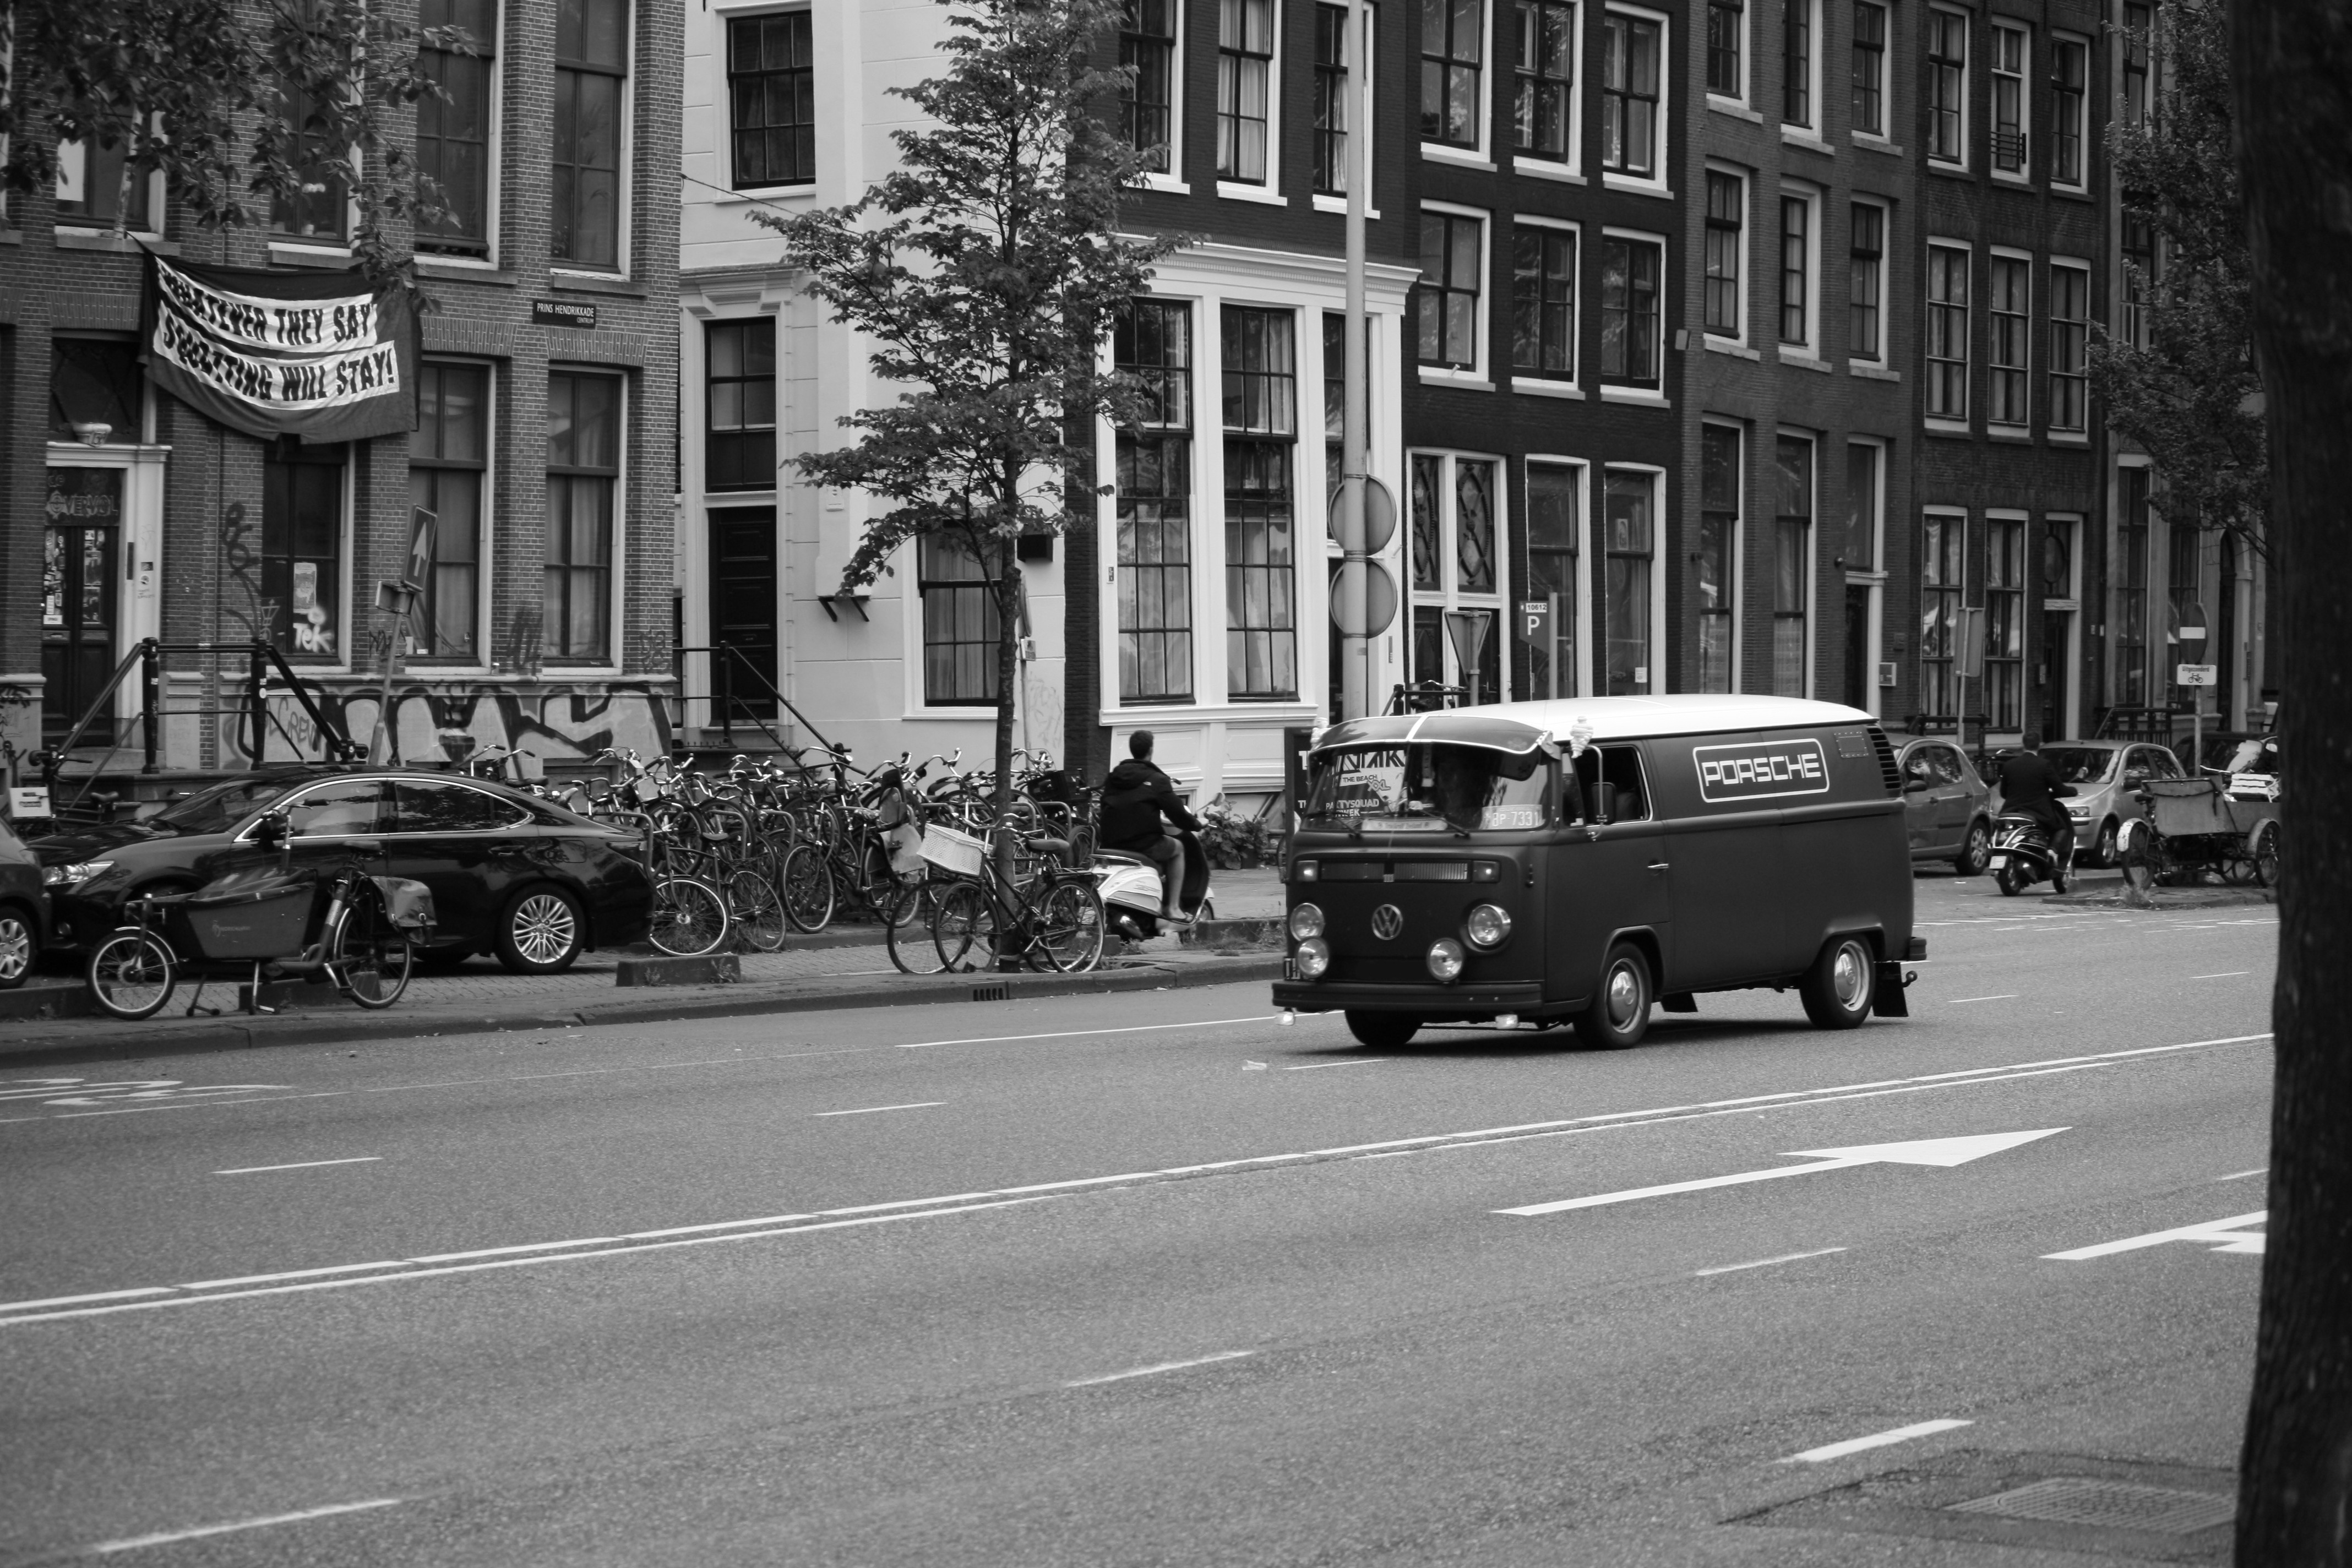 General 4272x2848 monochrome Volkswagen Volkswagen Bus street car photography city